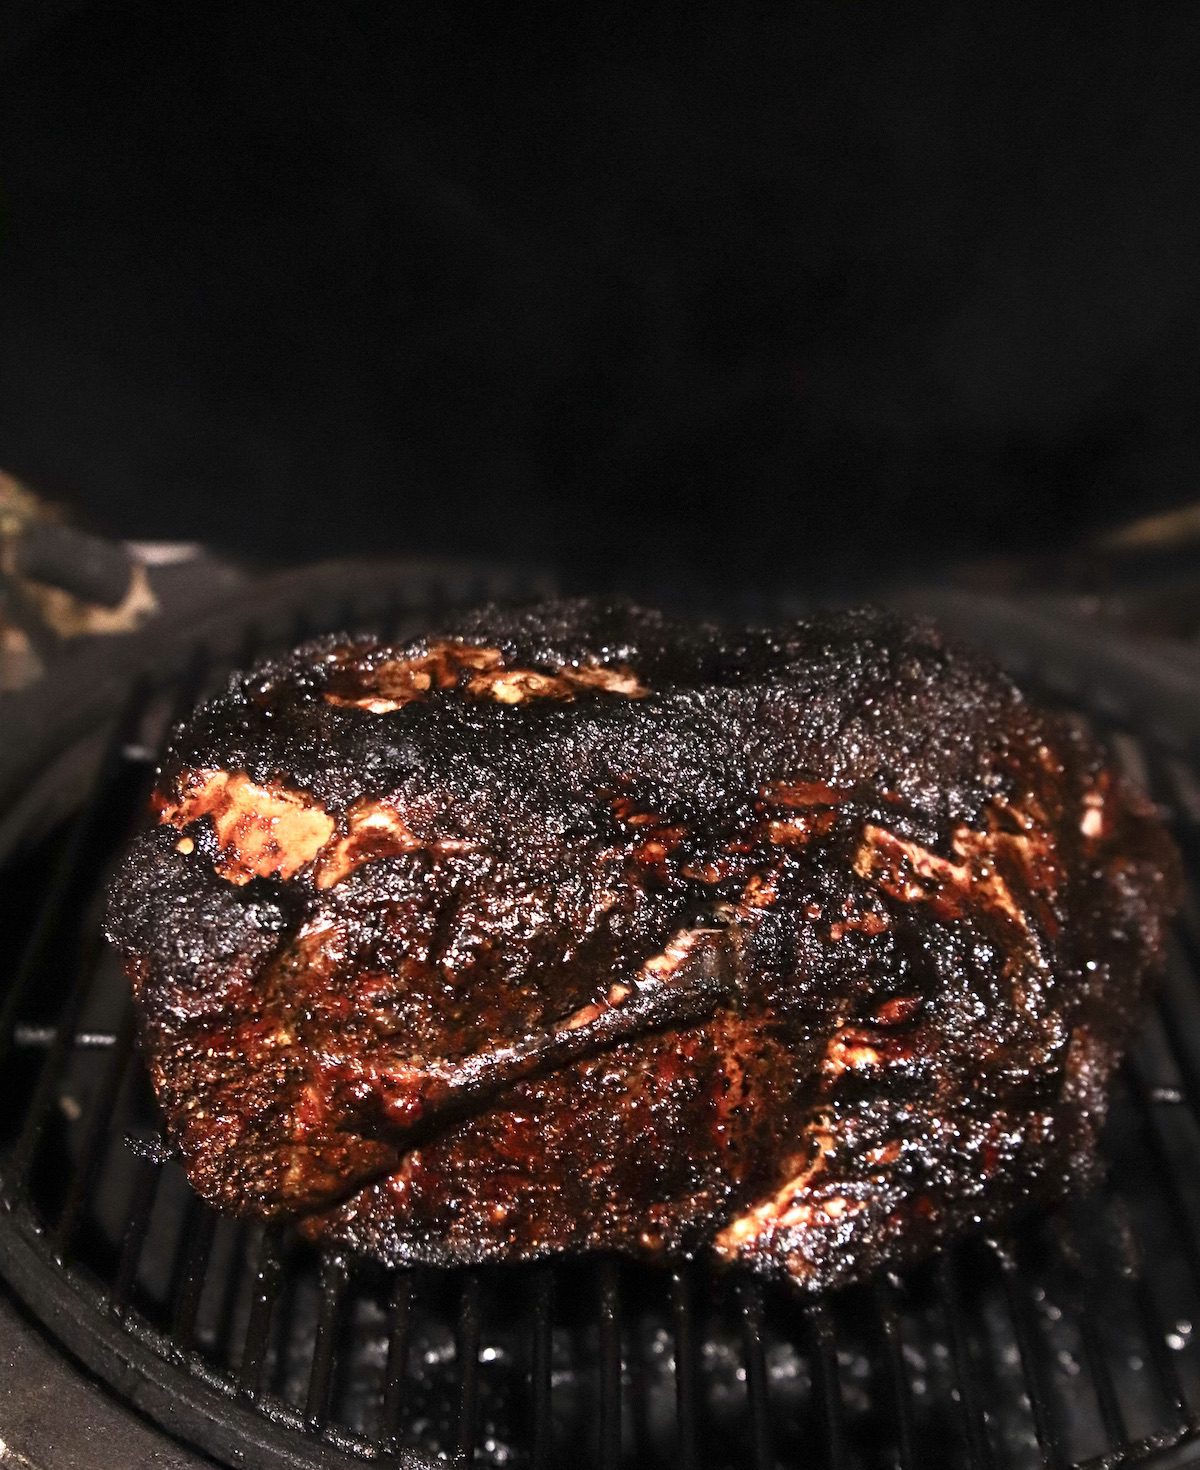 grilling pork shoulder